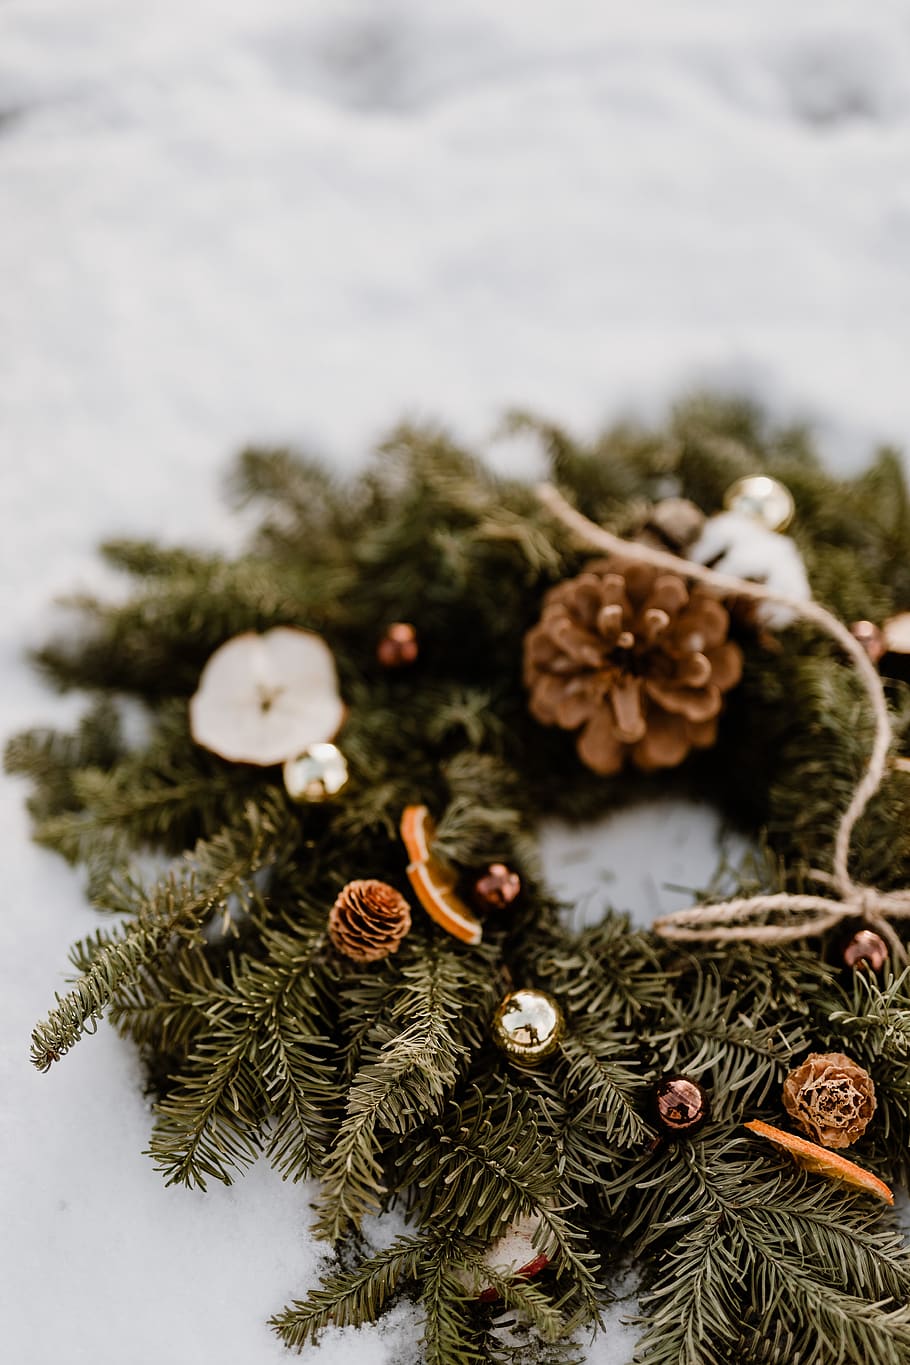 navidad, decoración, decoraciones, diciembre, nieve, invierno, guirnalda, árbol, decoración navideña, árbol de navidad